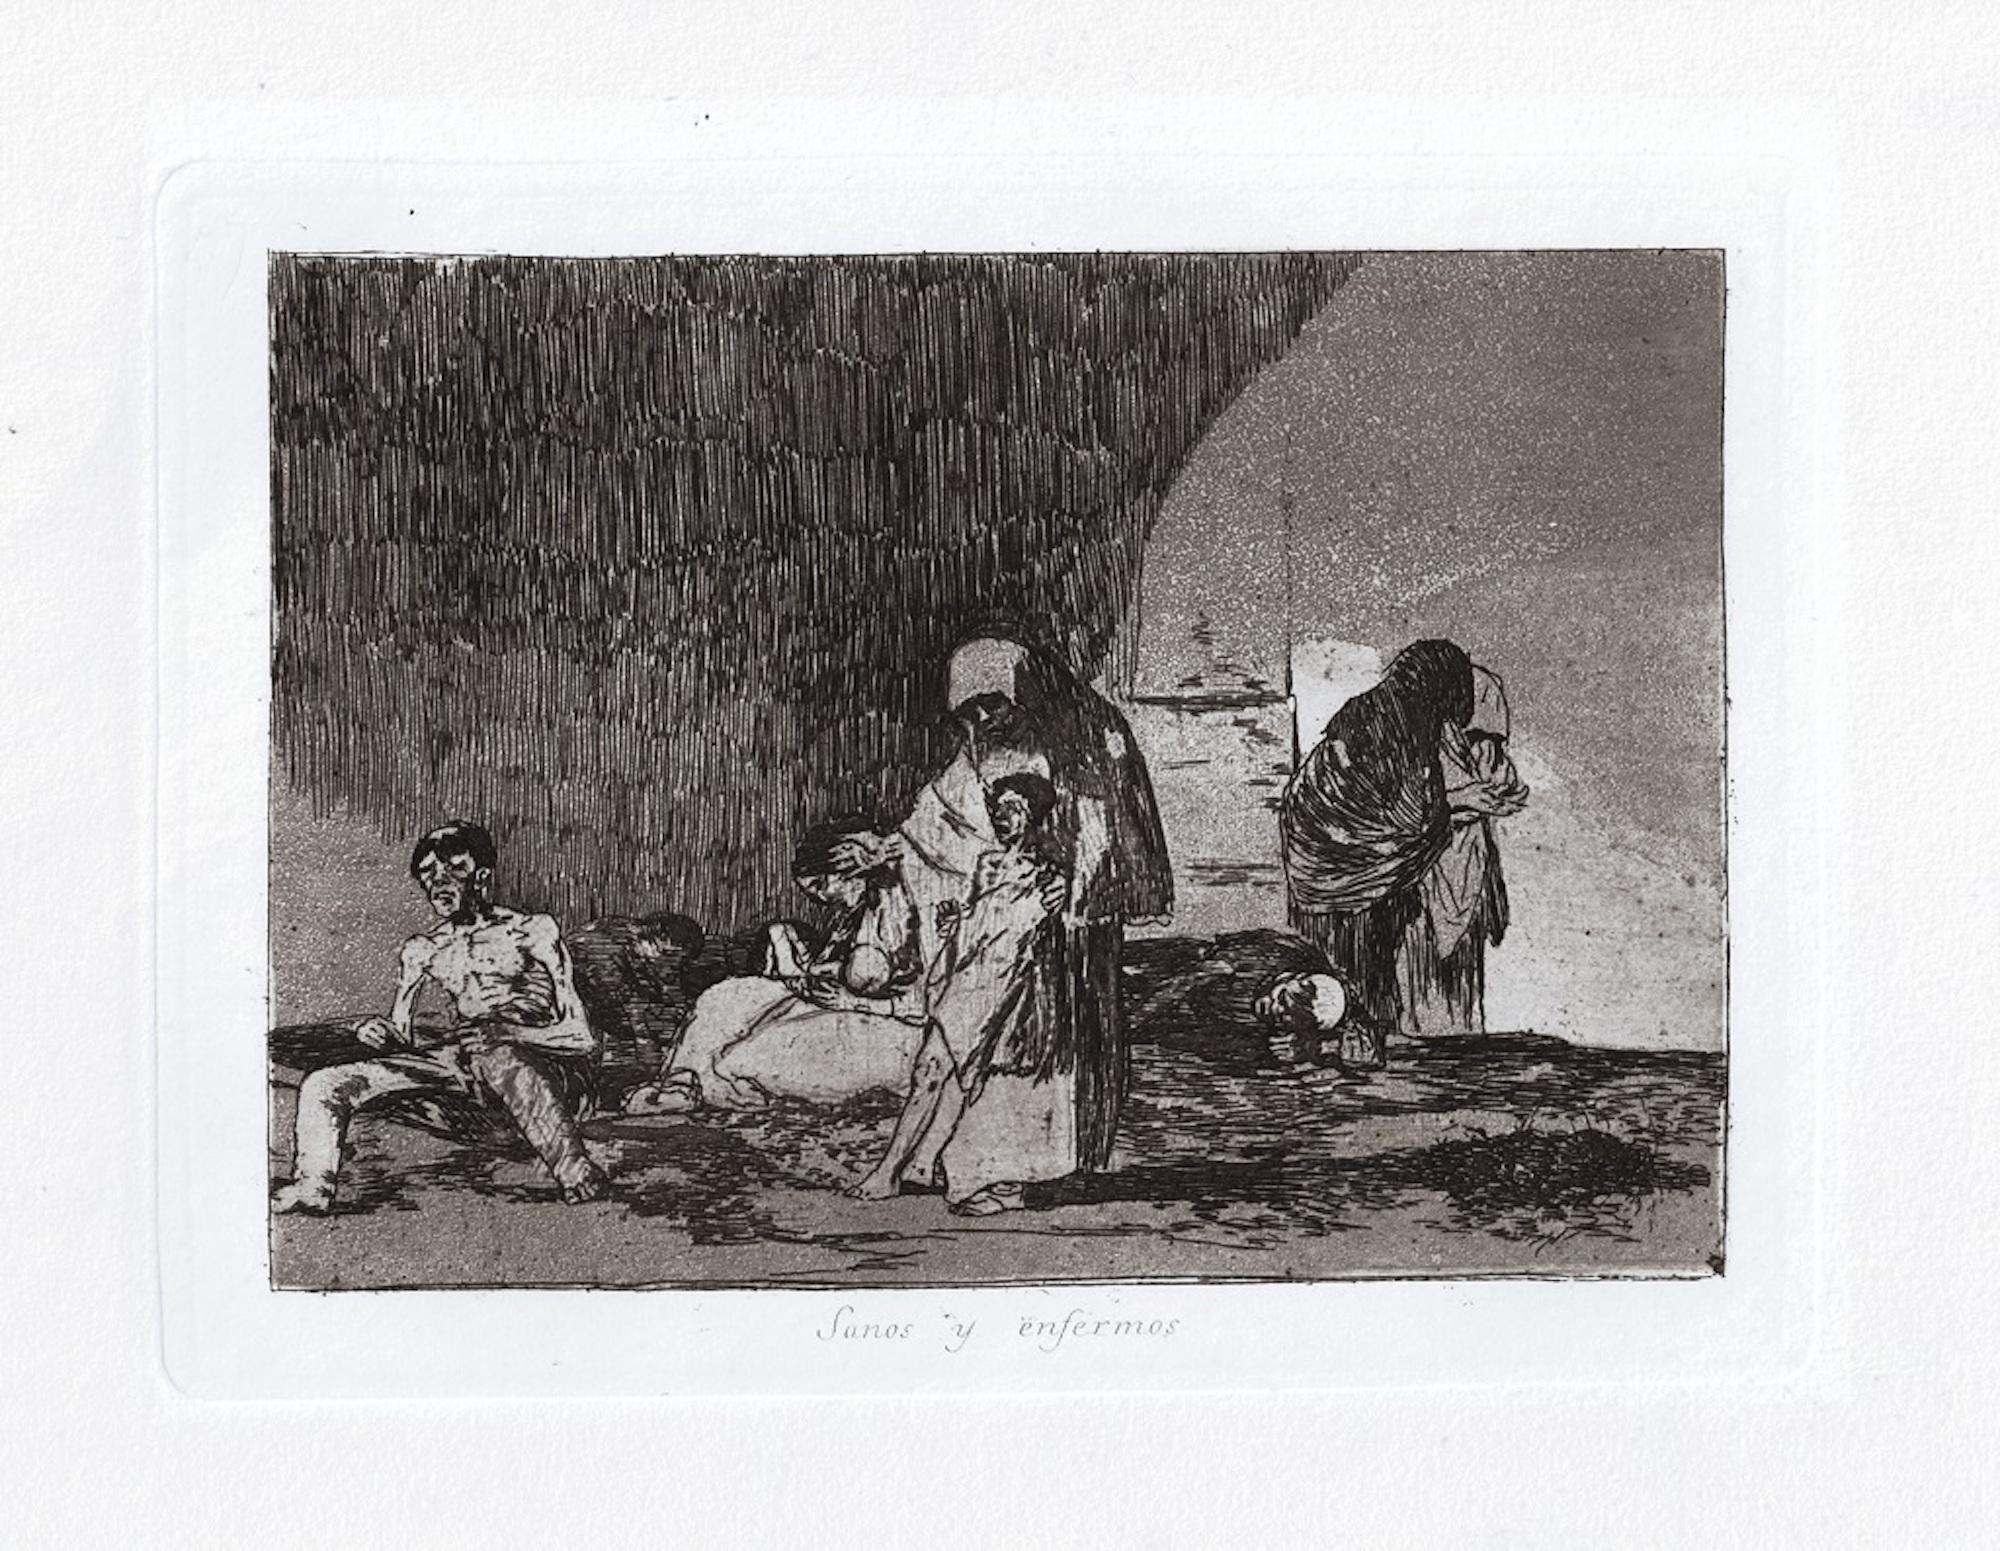 Sanos y enfermos est une œuvre d'art originale réalisée par le grand artiste espagnol Francisco Goya en 1810. 

Gravure originale sur papier. 

L'œuvre appartient à la célèbre série "Los Desastres de la Guerra" réalisée pendant les années de la